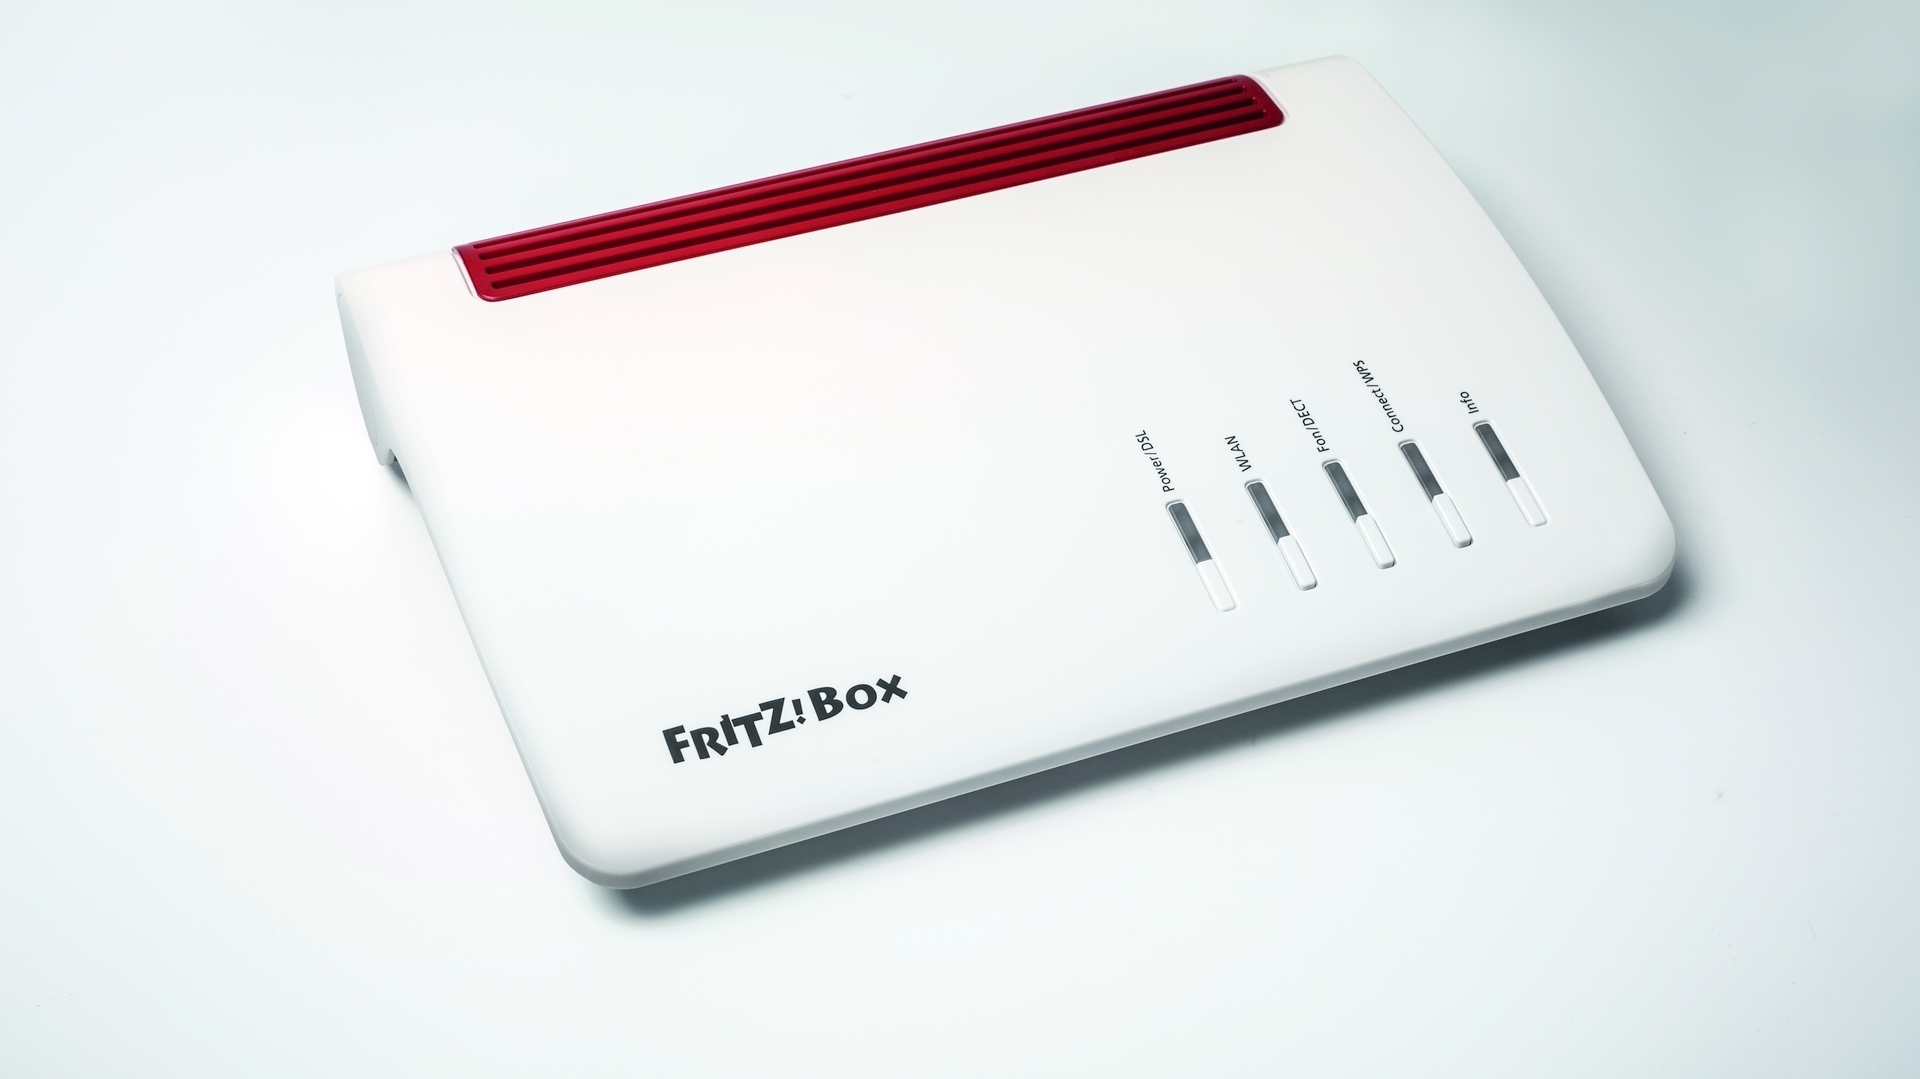 Fritzbox als Smart-Home-Zentrale | heise online